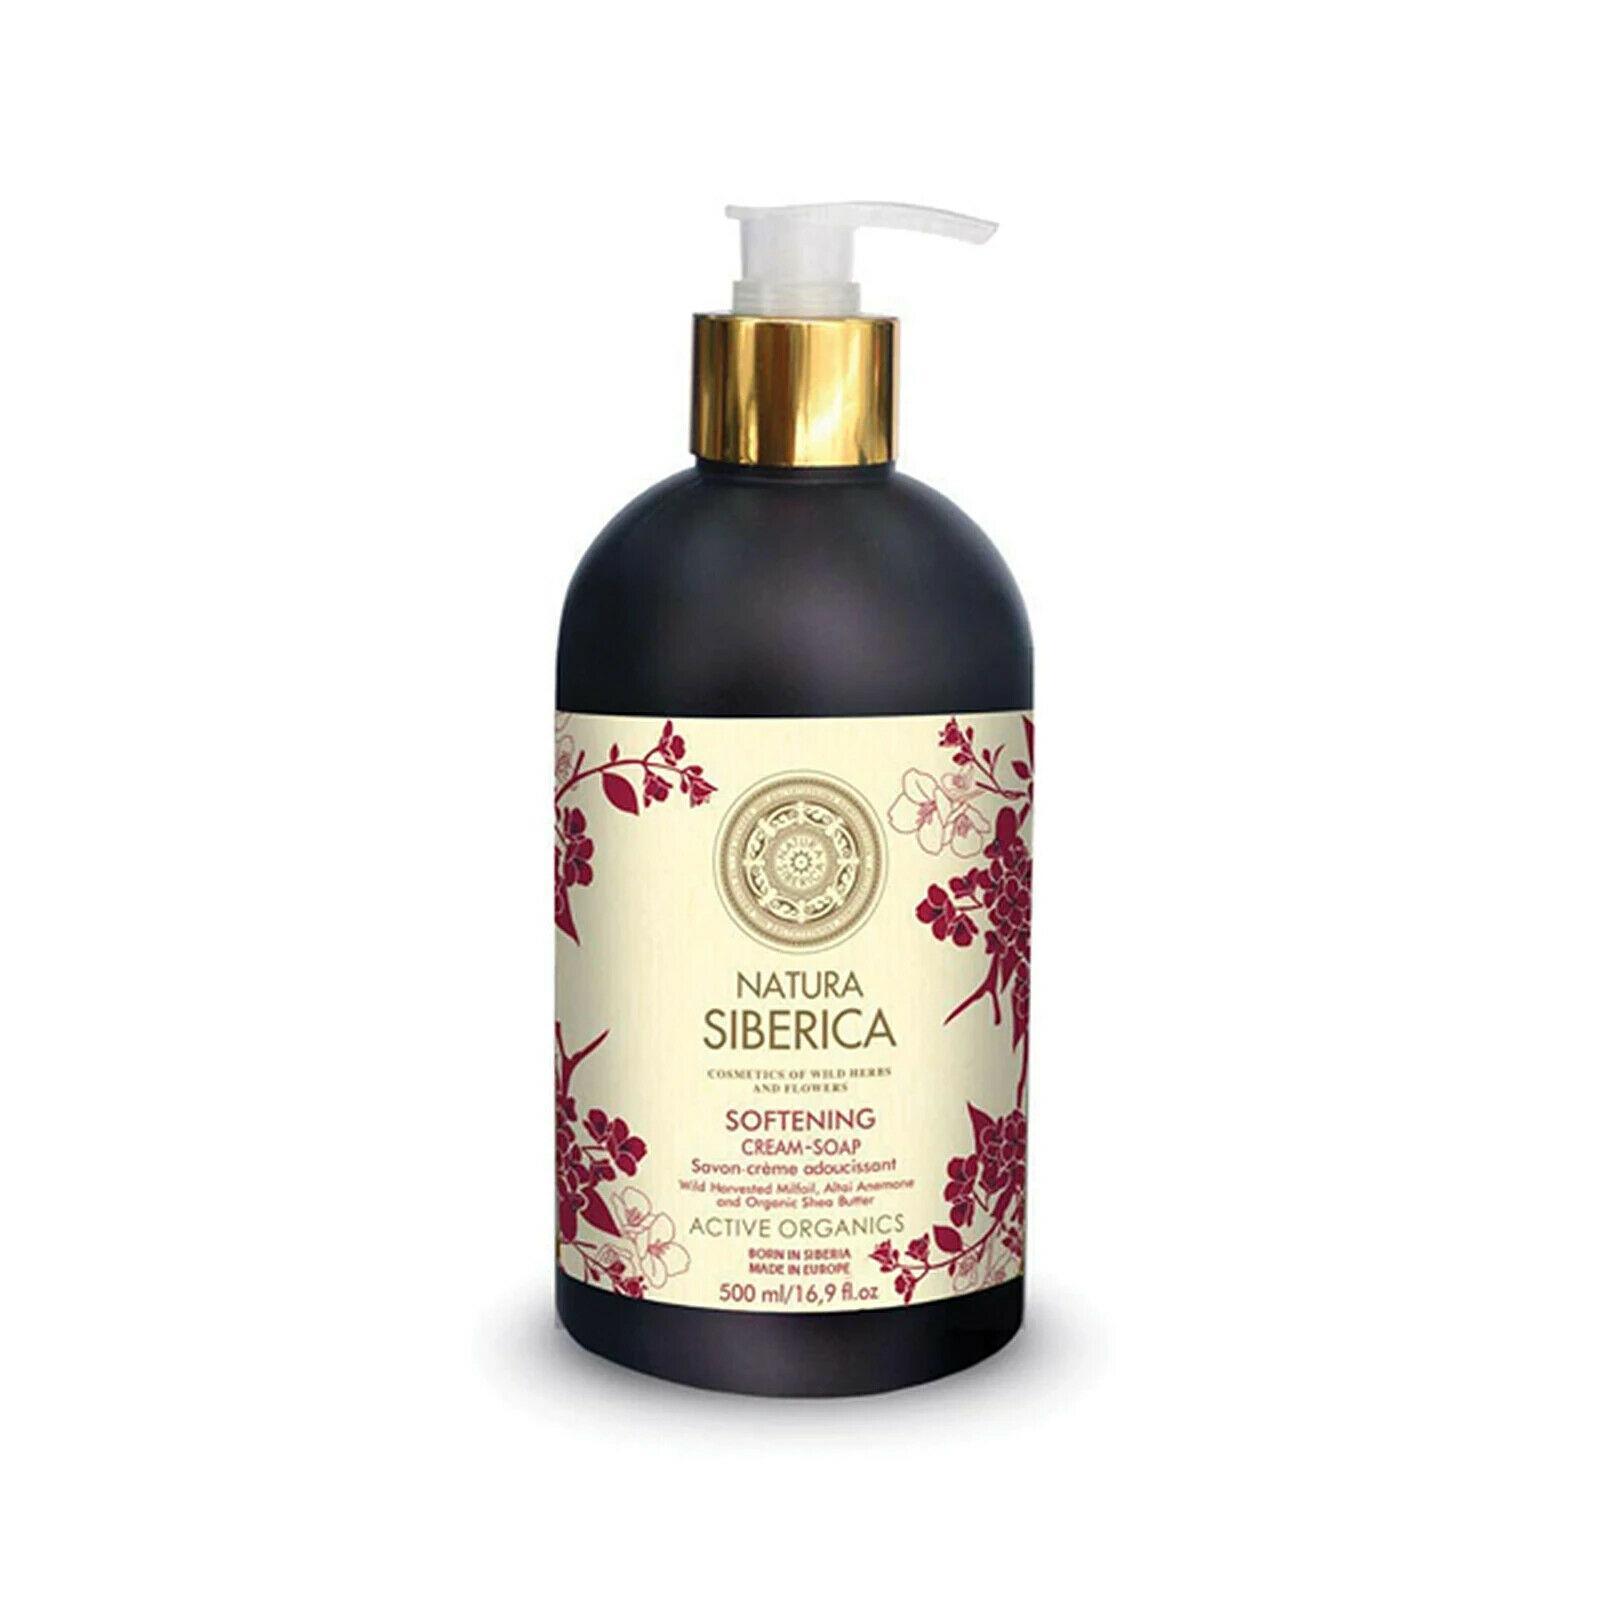 Wildberries Online - NATURA SIBERICA Softening Cream-Soap (500ml)